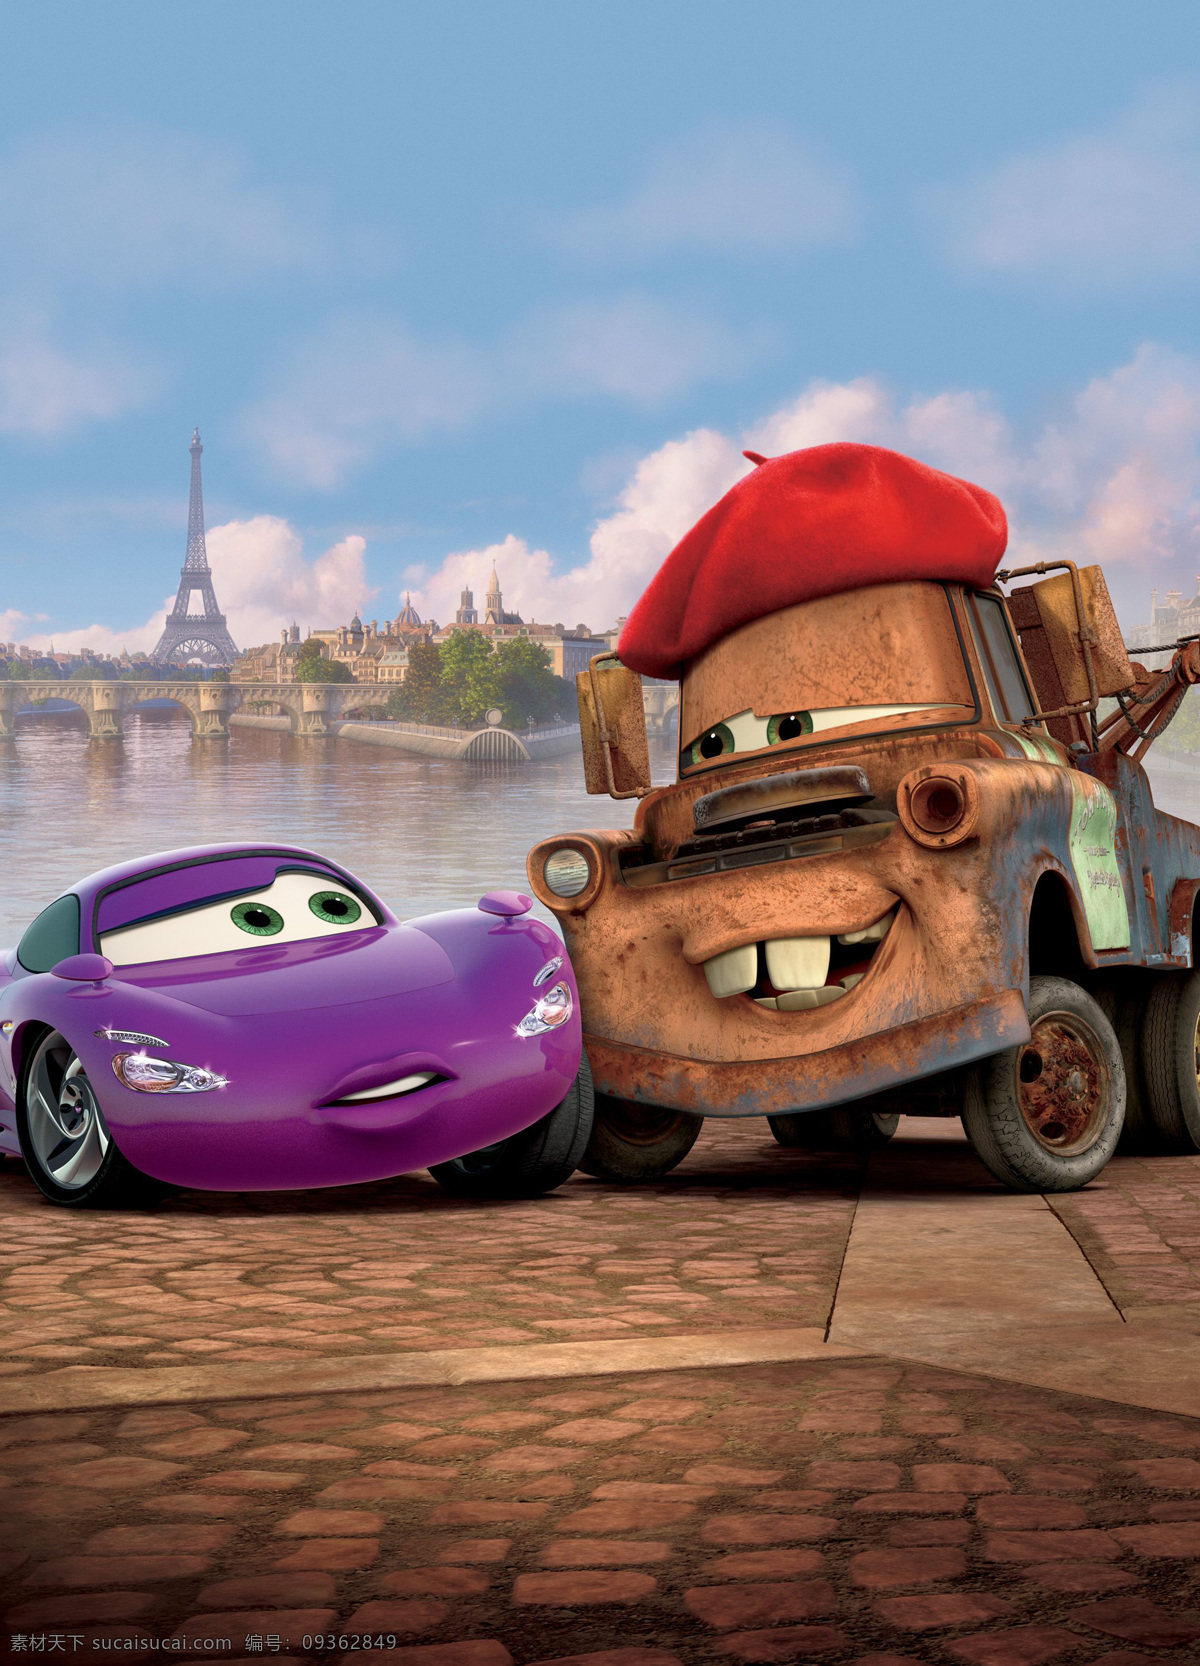 赛车总动员二 赛车总动员2 赛车总动员 飞车正传 闪电 麦坤 跑车 动画 剧照 皮克斯 迪士尼电影 pixar 动漫动画 动漫人物